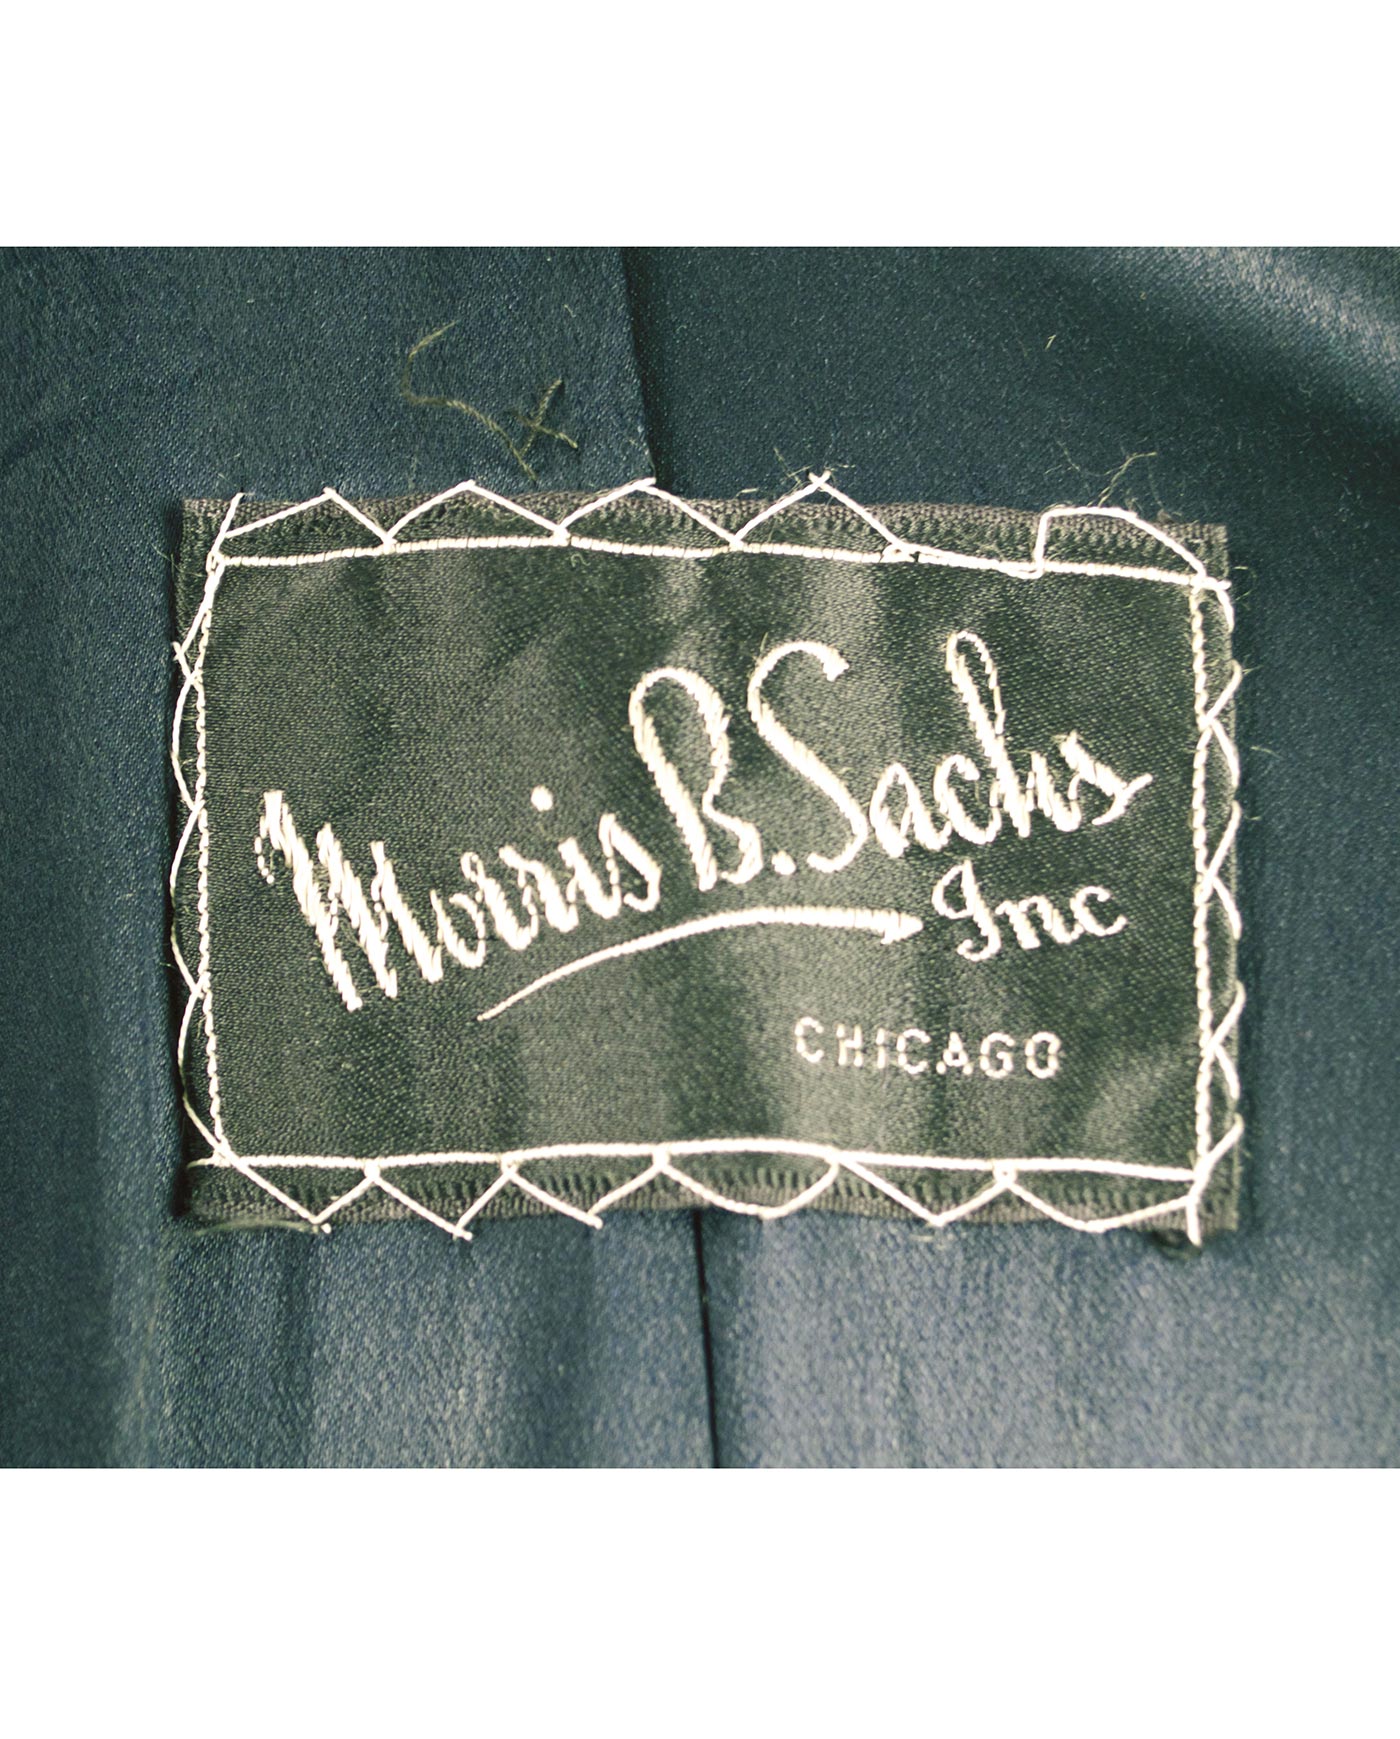 MORRIS B.SACHS Inc. wool coat 40s